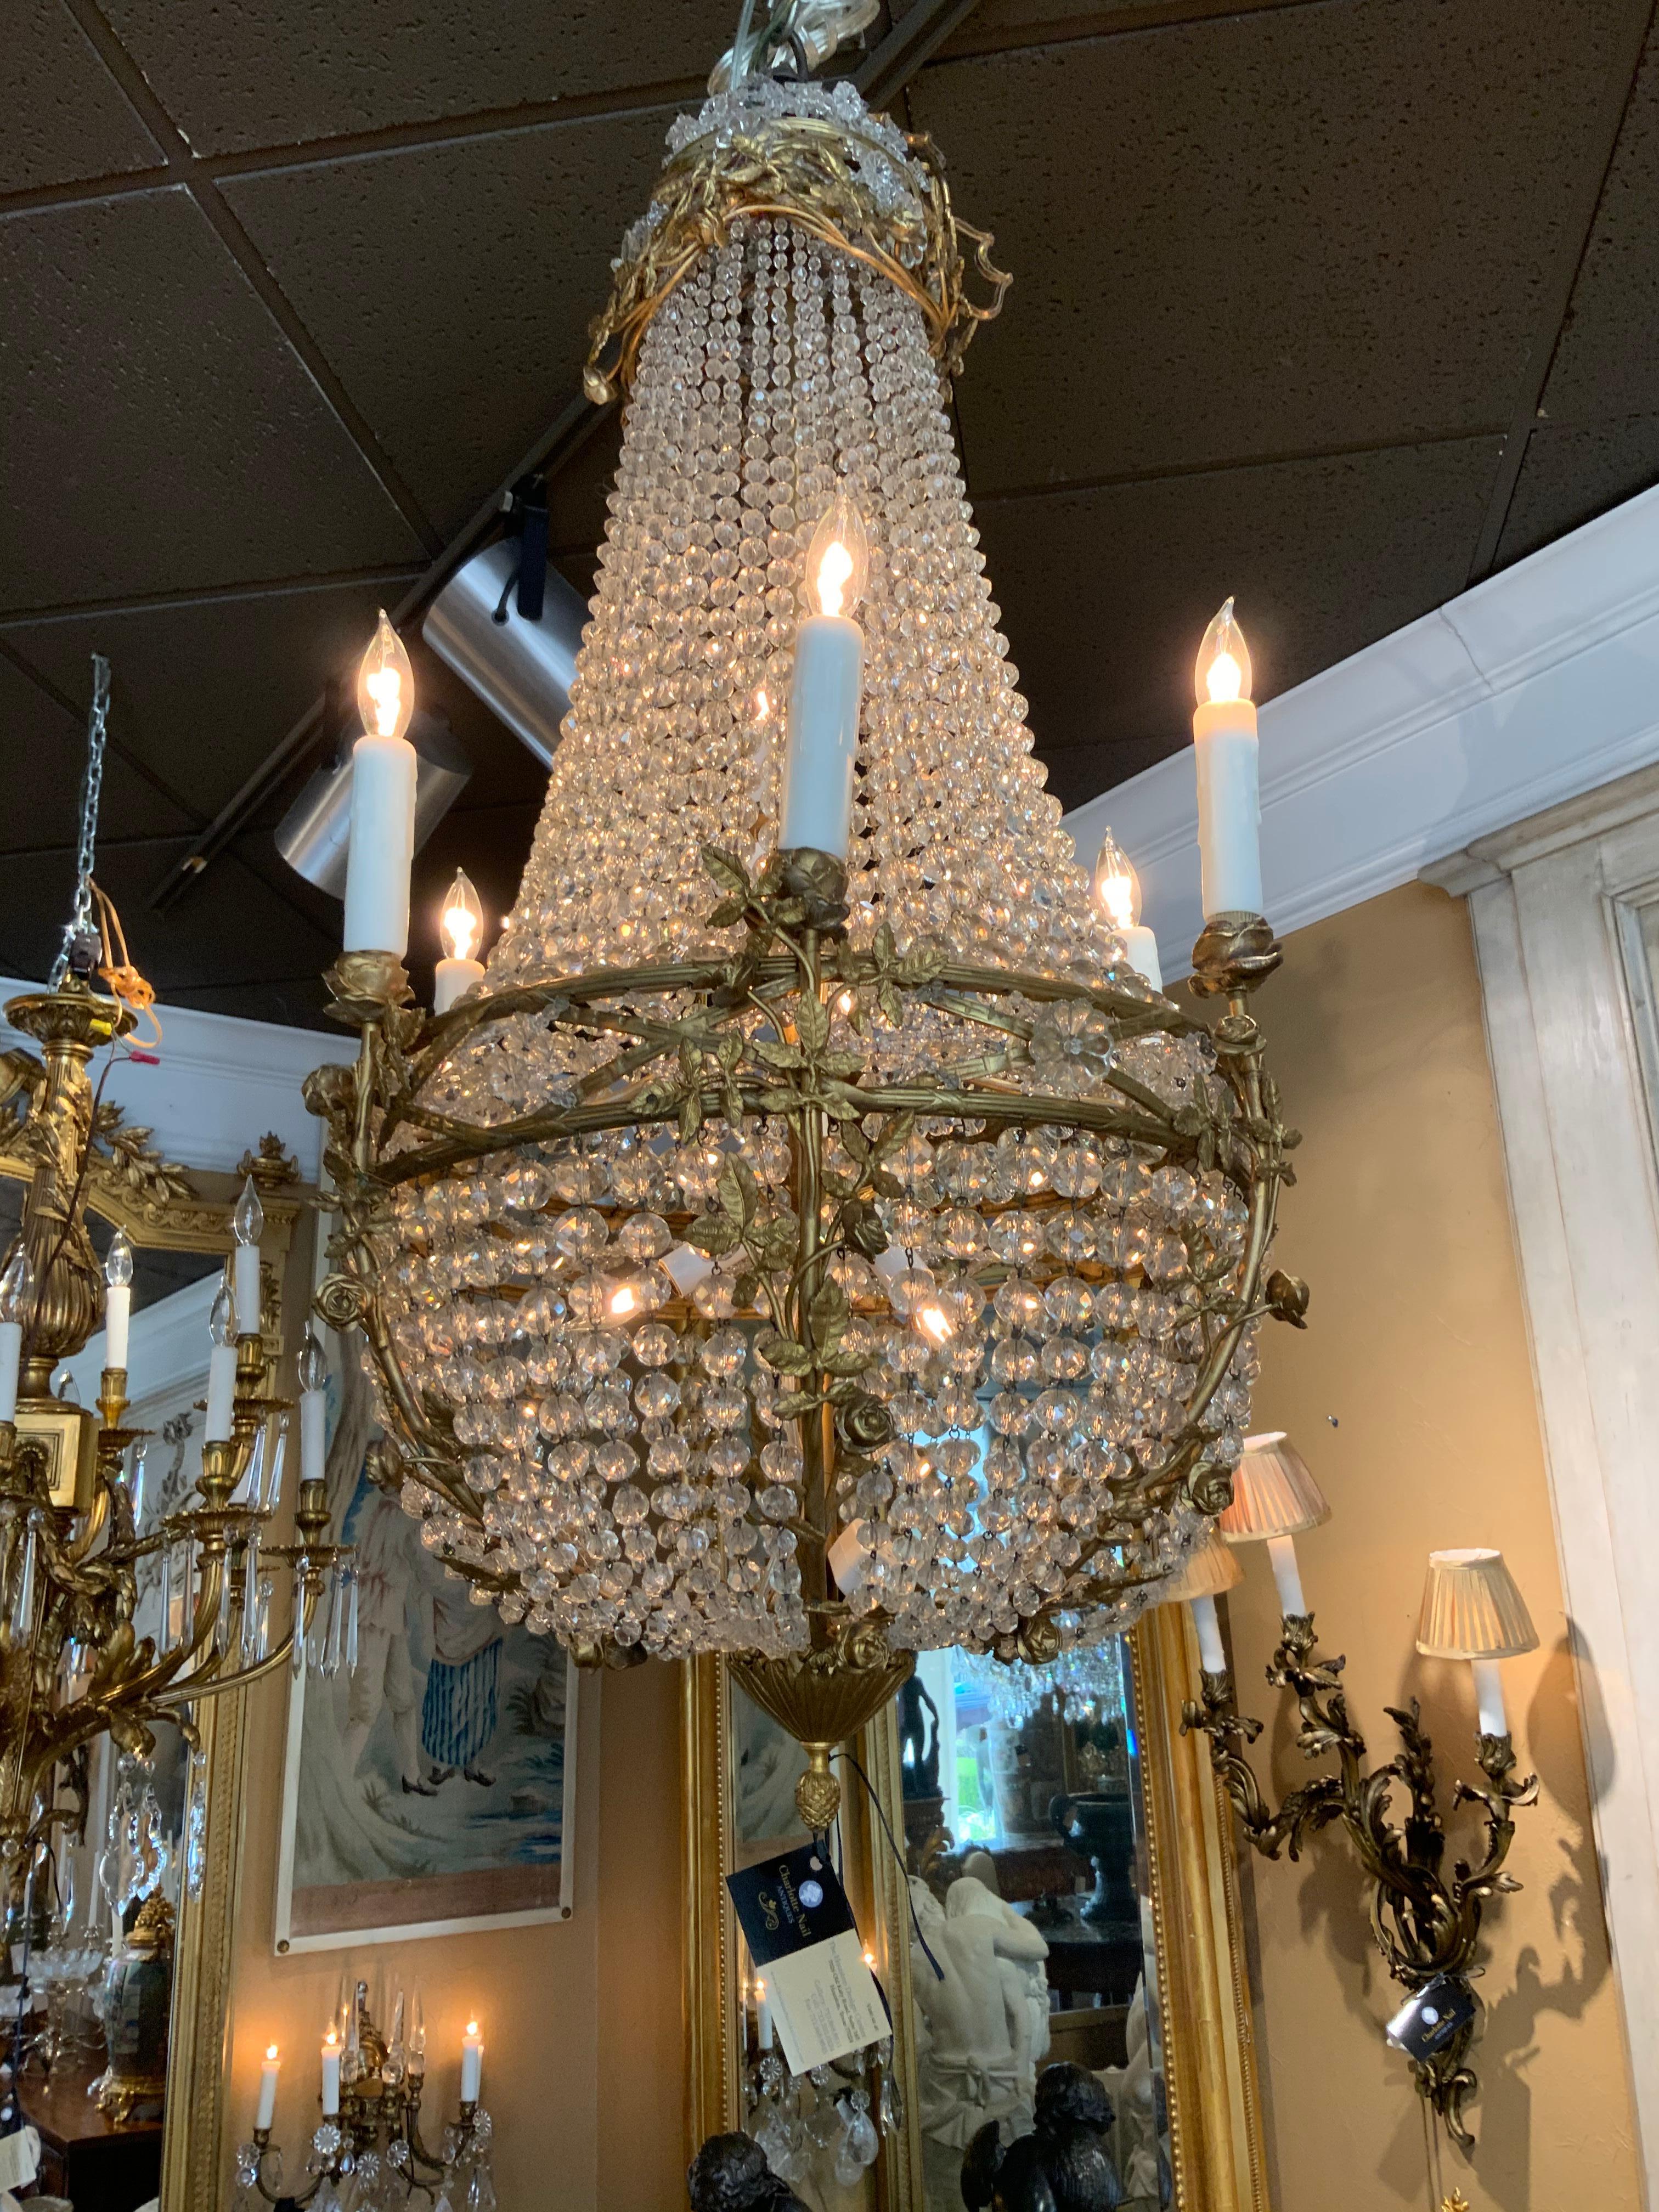 Französisch sac de pearl Empire-Stil Kronleuchter mit Kristallperlen und Bronze dore floralen Dekorationen,
Endet in einer Eichelspitze.